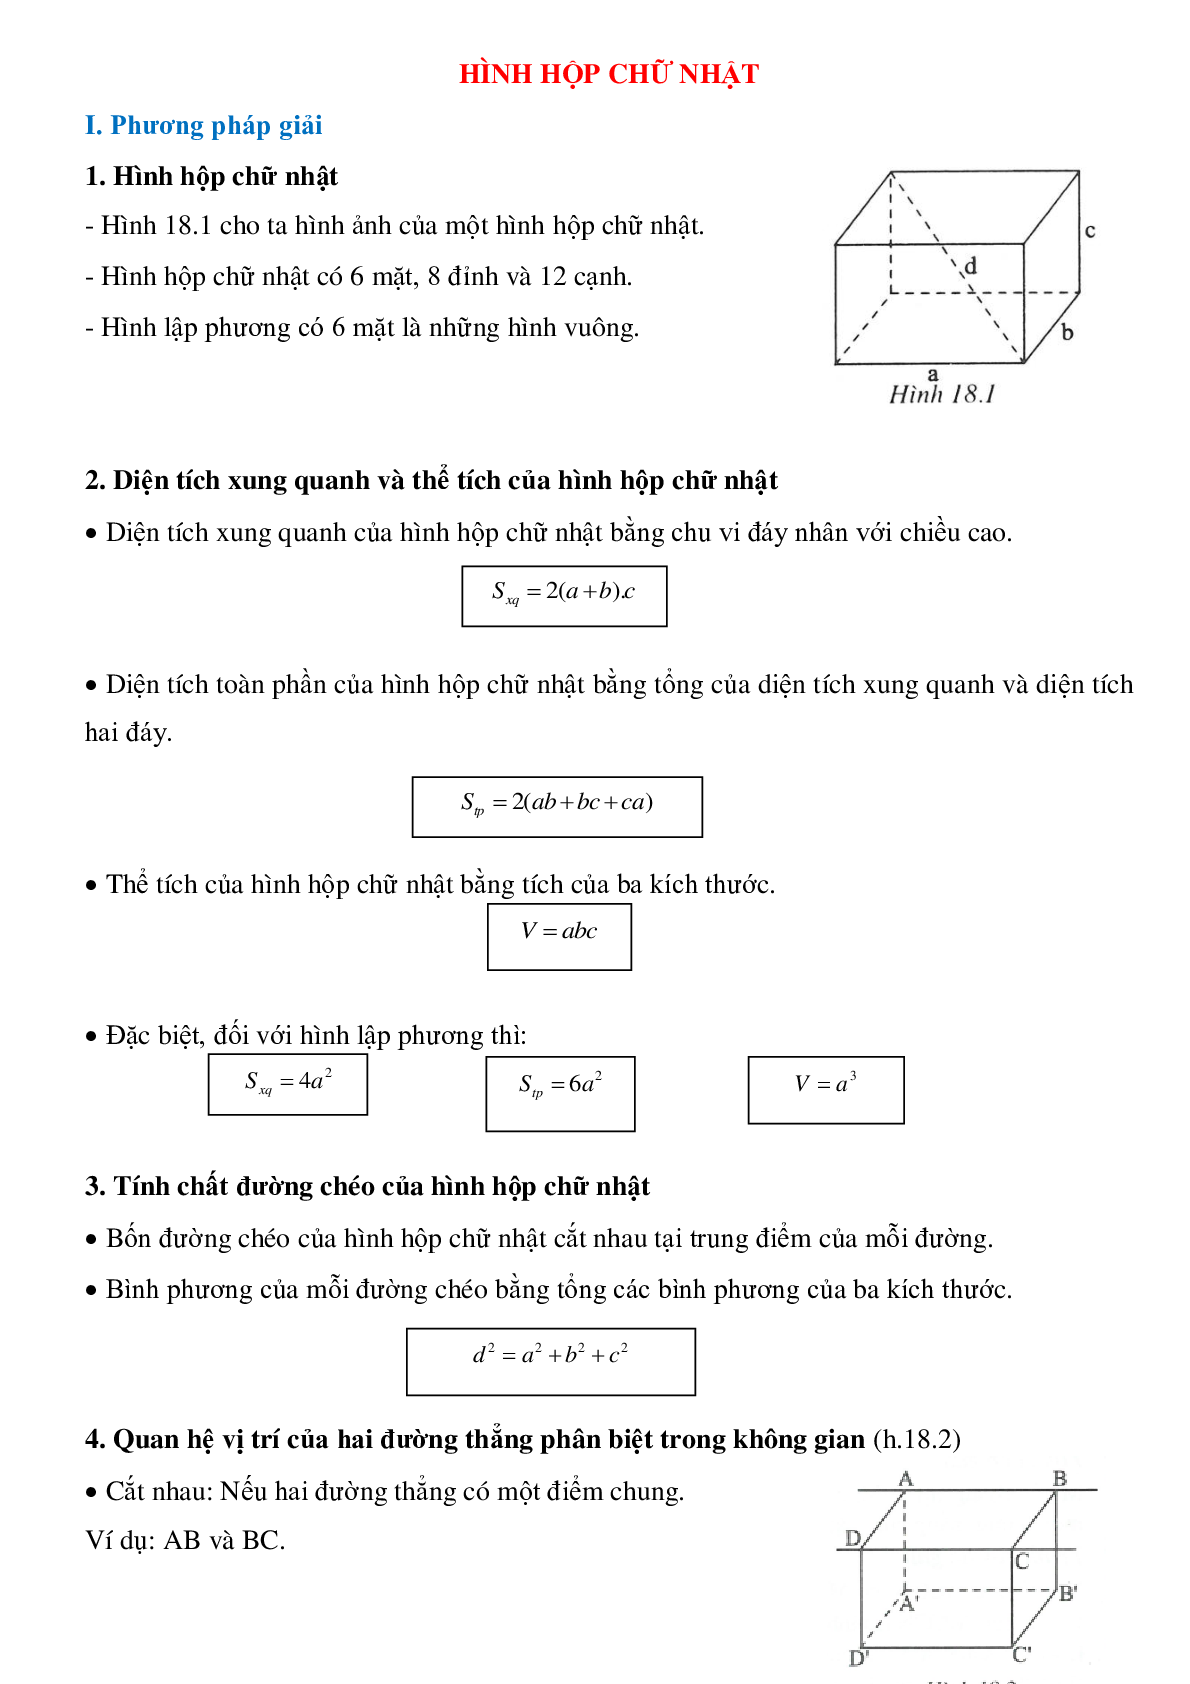 Giải vở bài tập toán 5 bài 104 : Hình hộp chữ nhật. Hình lập phương